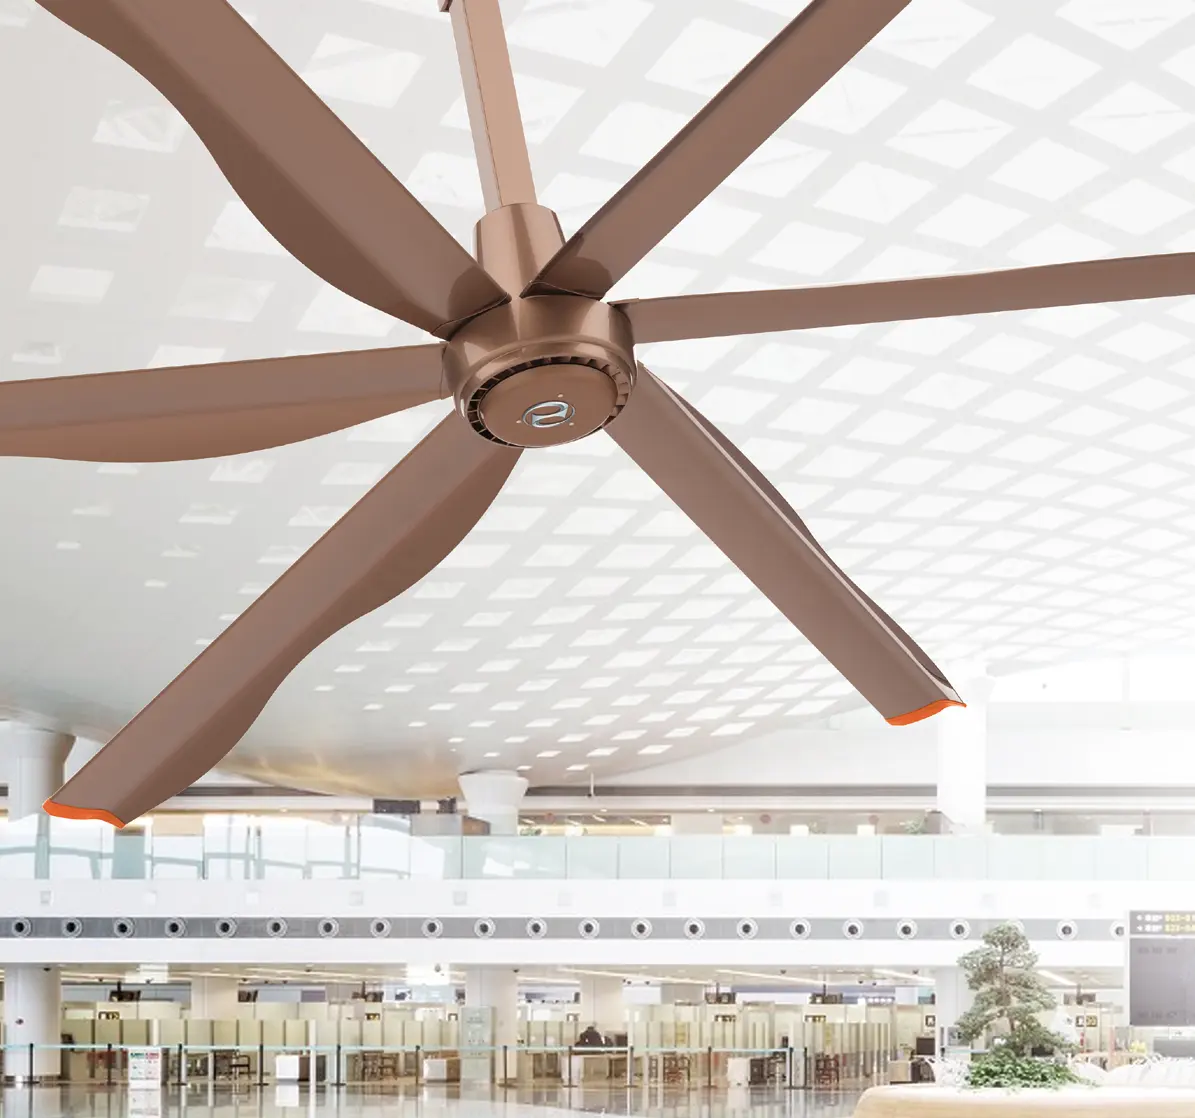 Hvls Dc Motor Bigass vendita calda più nuovo ventilatore da soffitto commerciale e industriale fabbrica ventilatore di ventilazione a soffitto raffreddamento